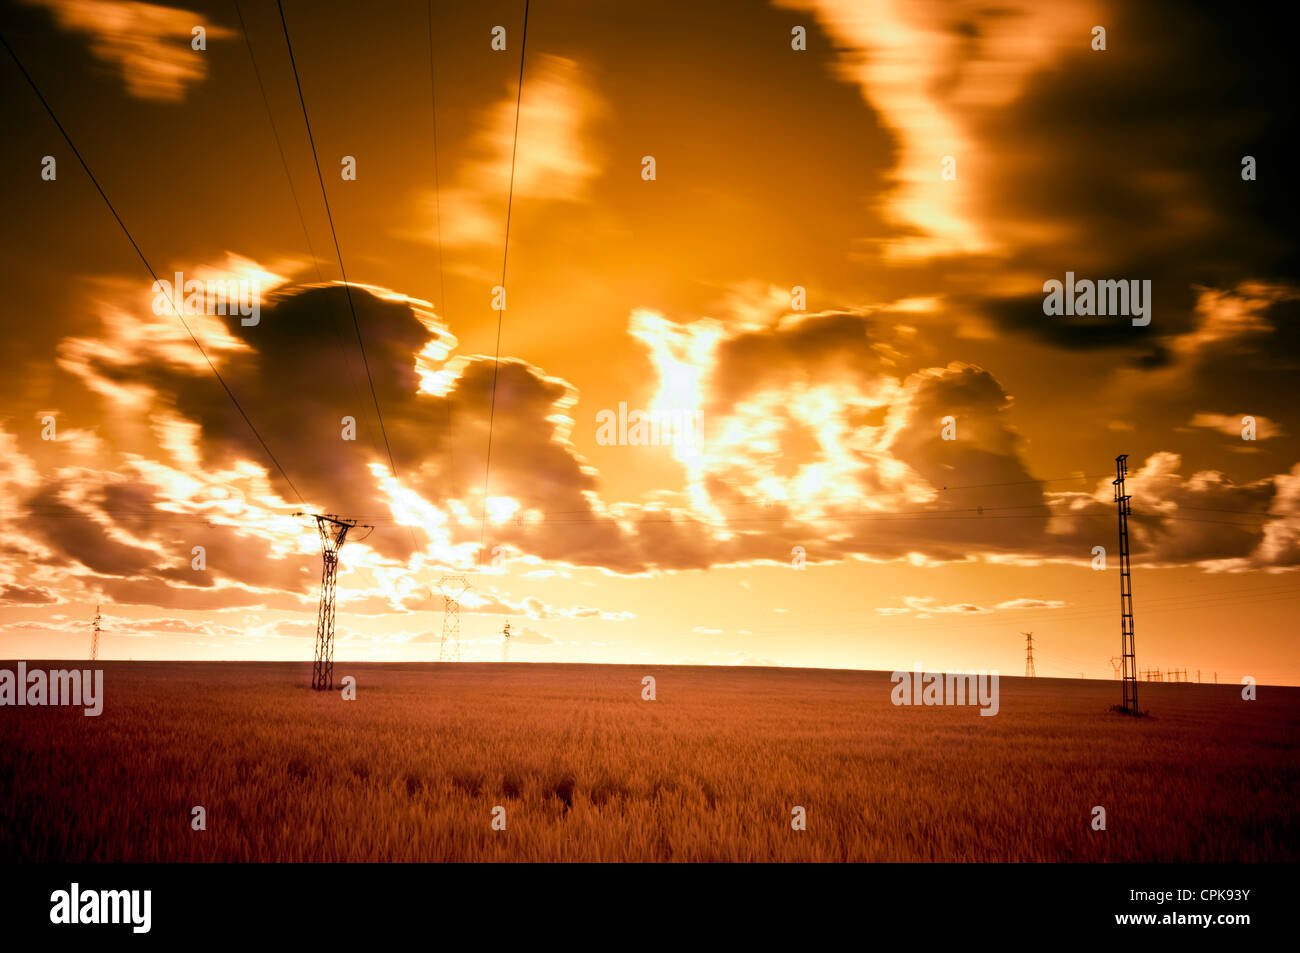 Infrarot-Bild ein Weizen Feld und Power line, Sanlucar la Mayor, Sevilla, Spanien Stockfoto